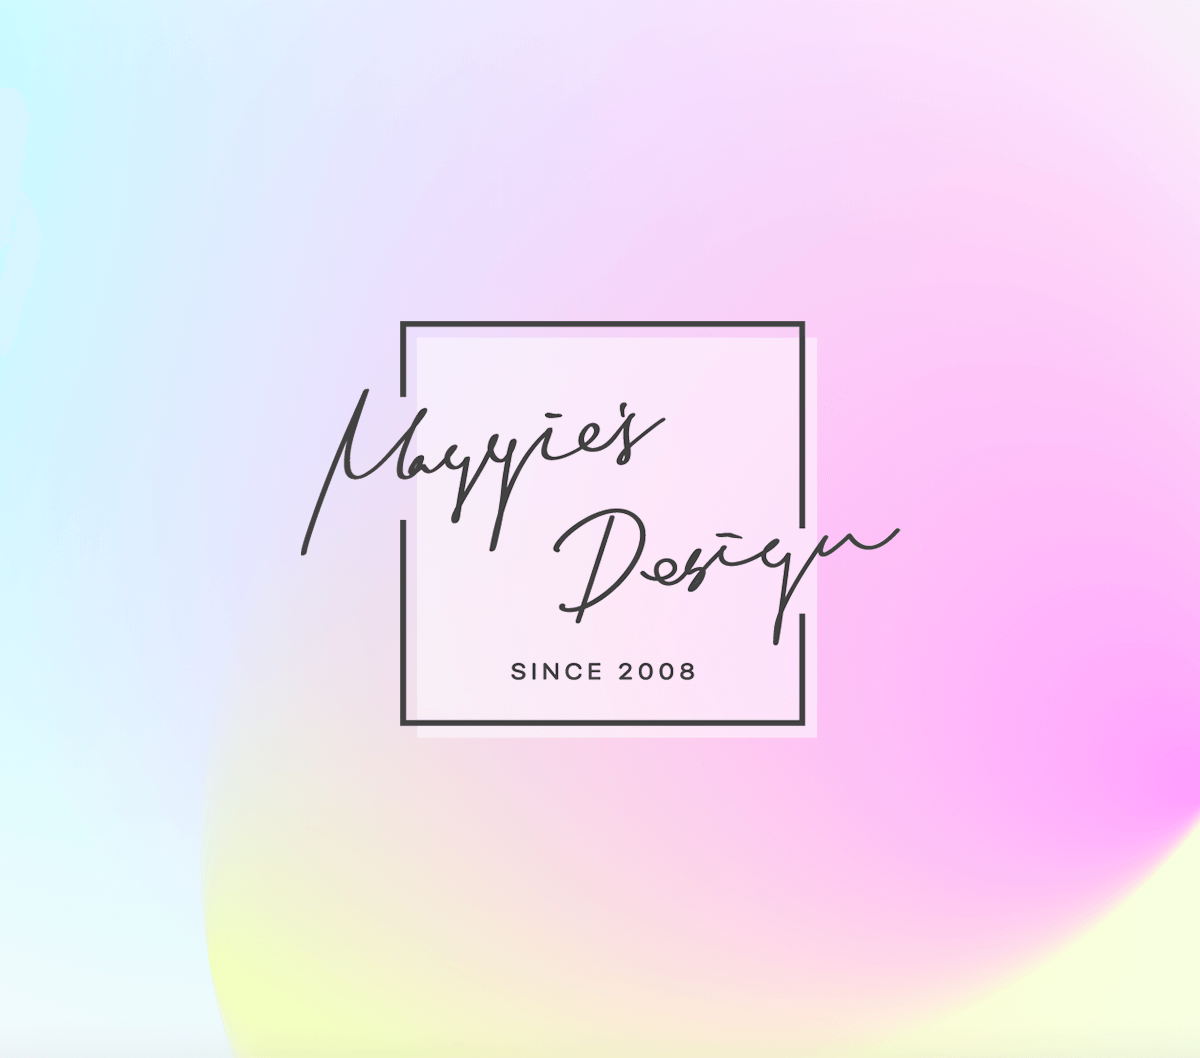 Maggie’s Design Logo Design